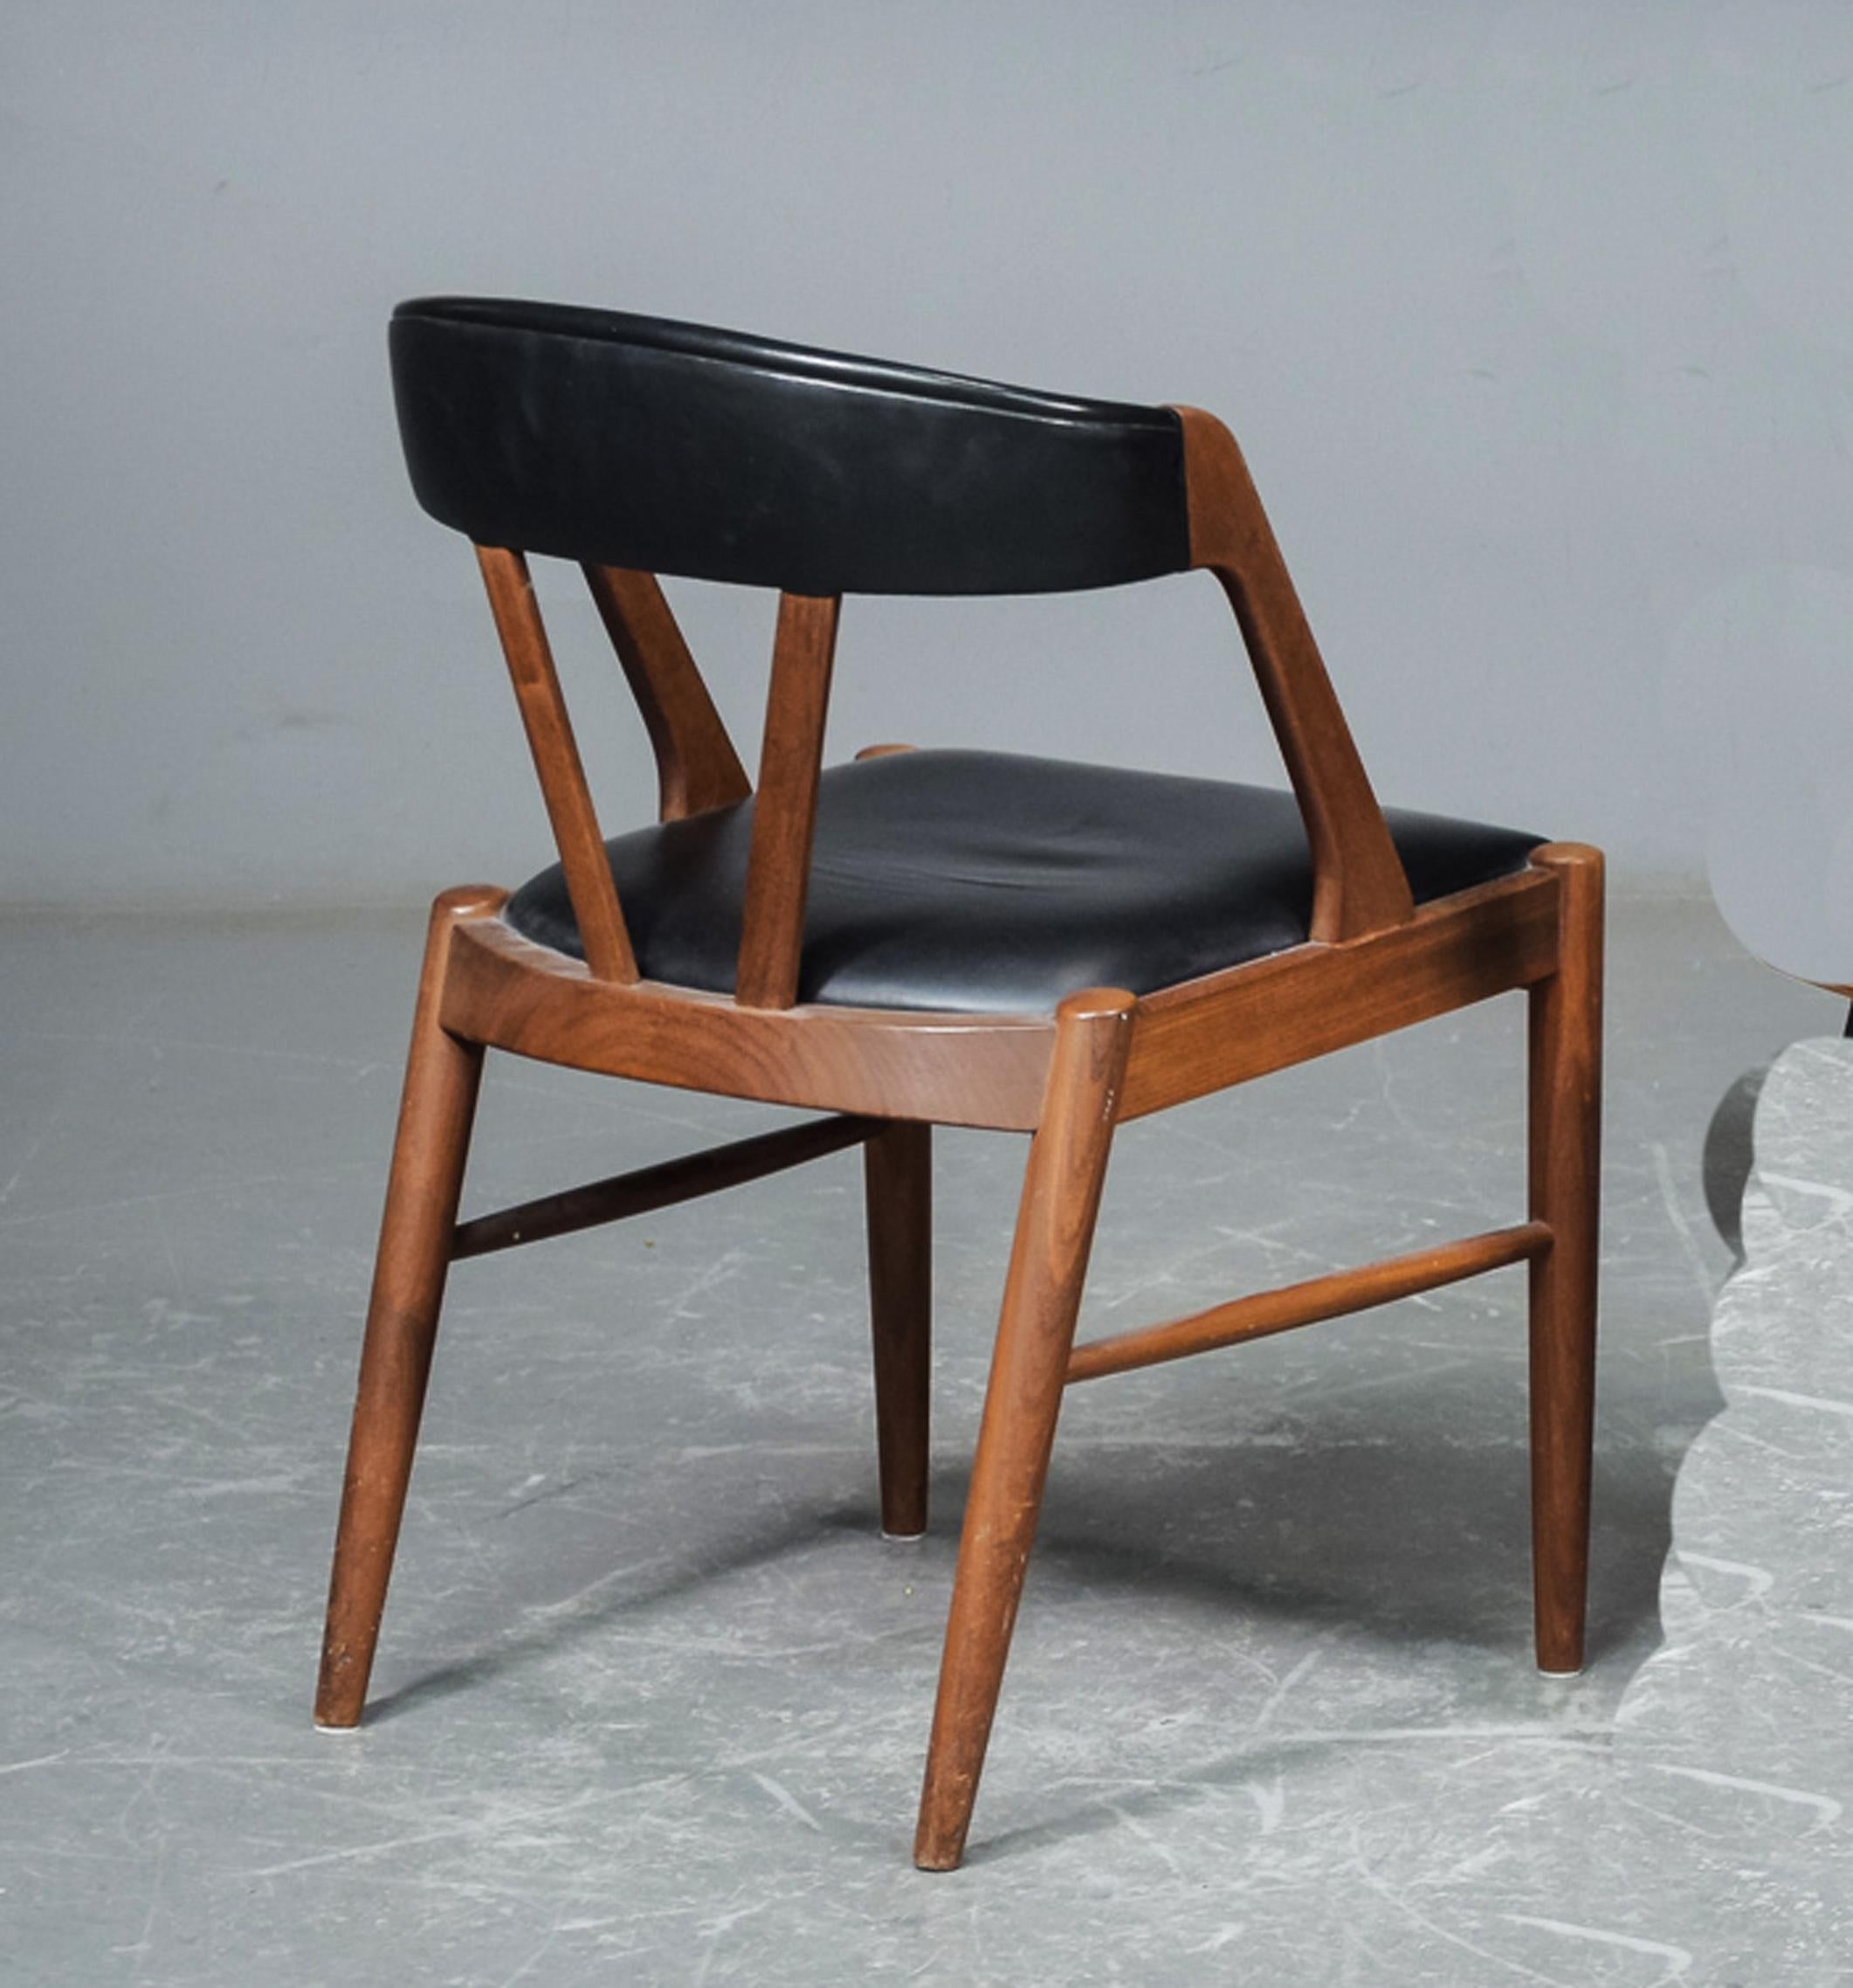 Sessel mit massivem Teakholzgestell, Sitz und Kopfteil gepolstert. Entworfen in den frühen 1970er Jahren. Im Stil des Kai Kristiansen Sessels 